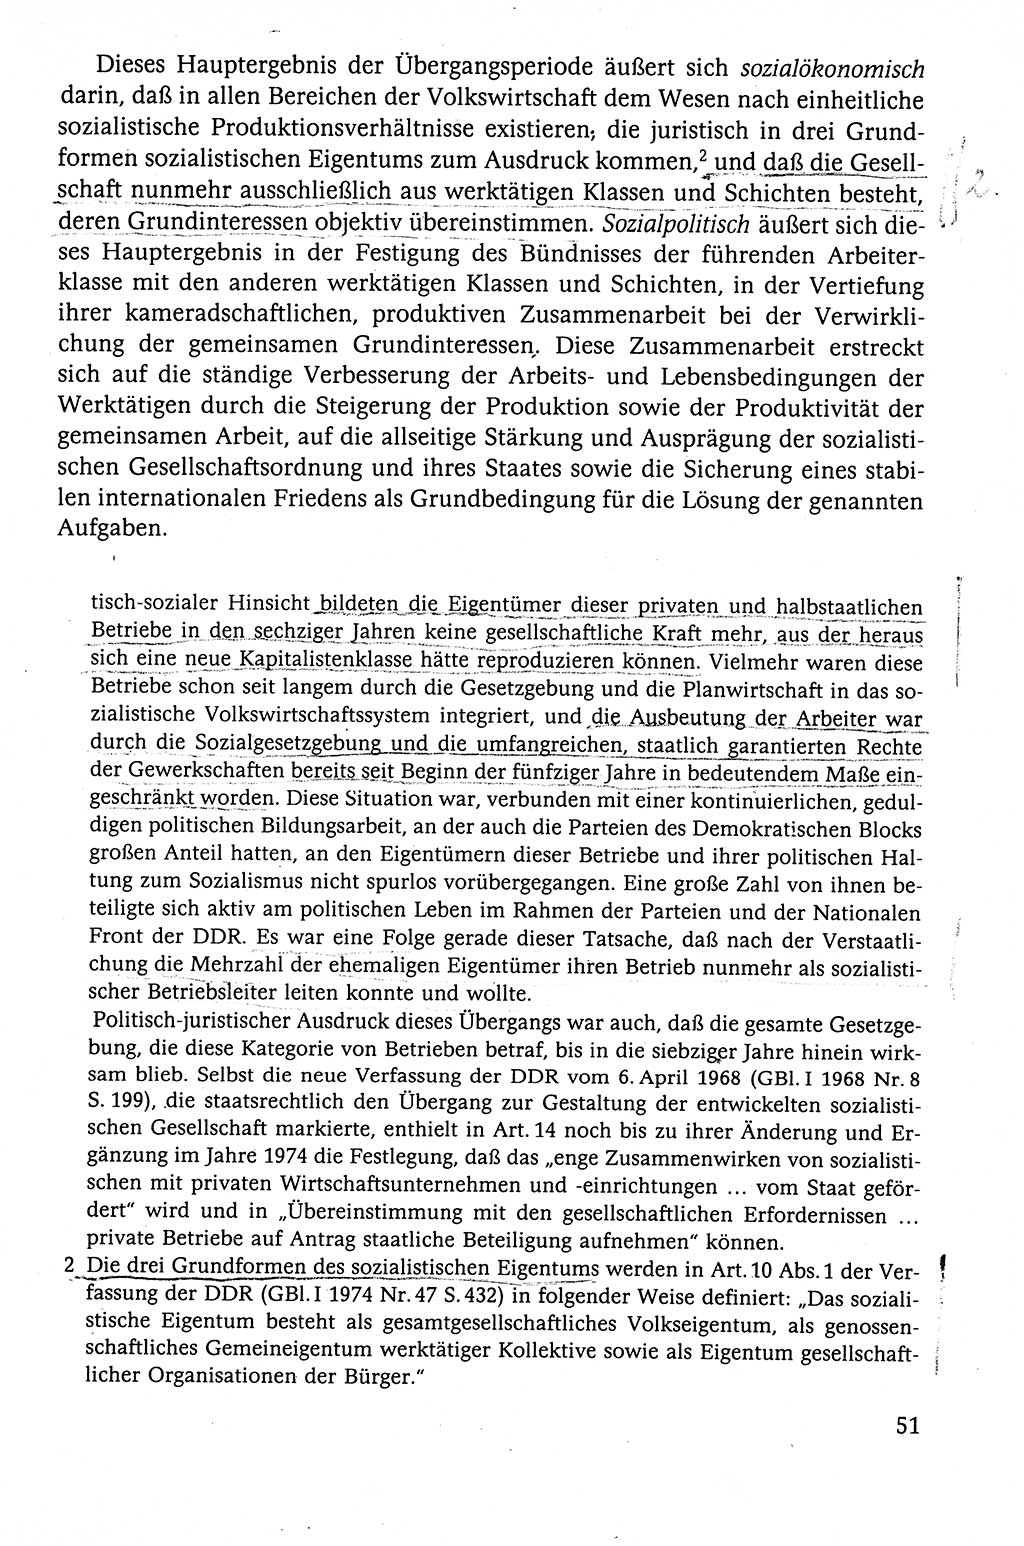 Der Staat im politischen System der DDR (Deutsche Demokratische Republik) 1986, Seite 51 (St. pol. Sys. DDR 1986, S. 51)